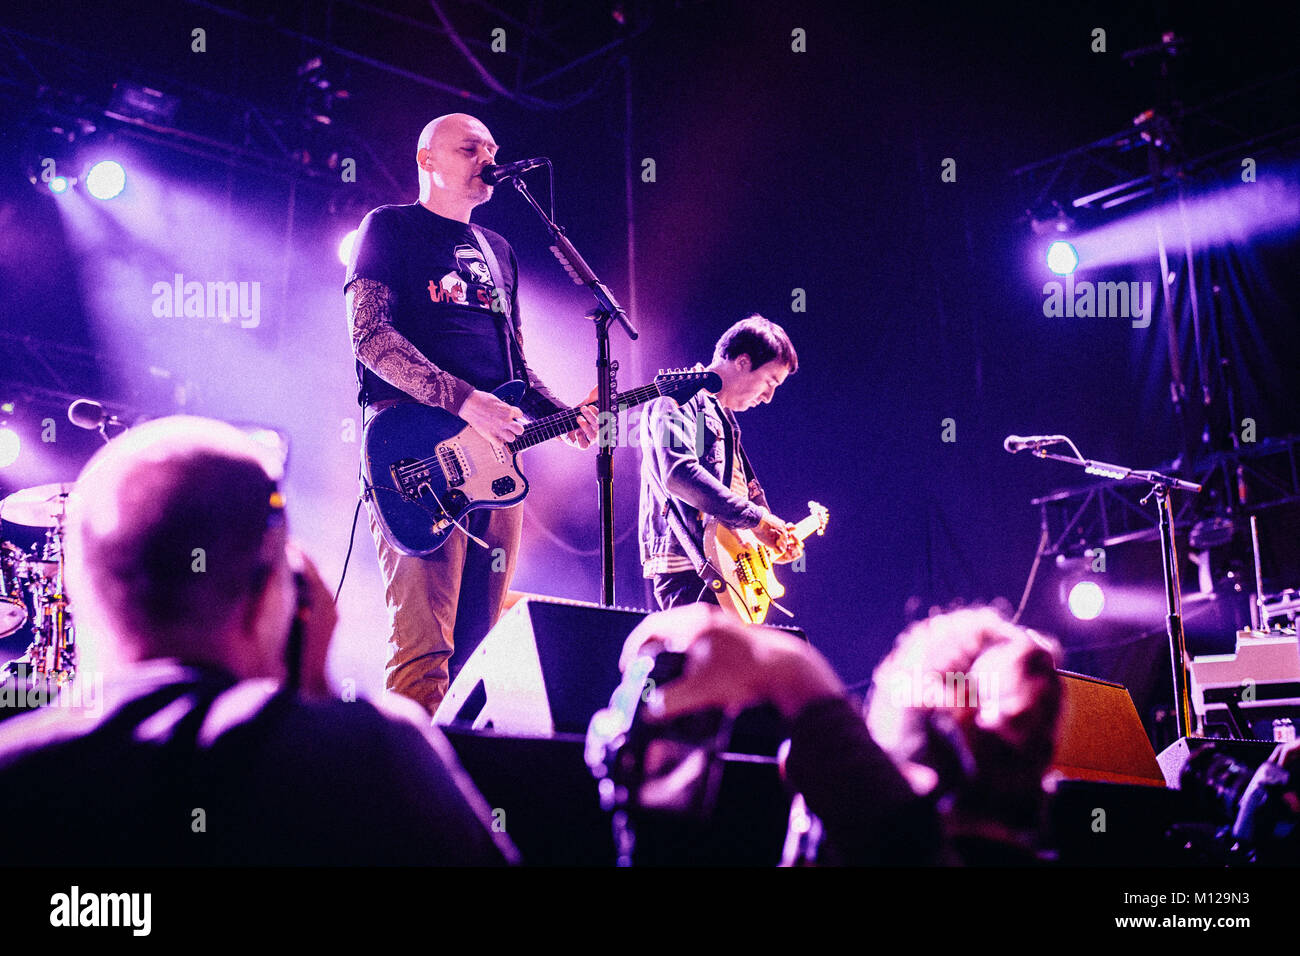 Billy Corgan et chanteur du groupe de rock américain The Smashing Pumpkins ont formé le groupe en 1988 et à nouveau en 2005 après une rupture dans l'année 2000. Pologne 2013. Banque D'Images